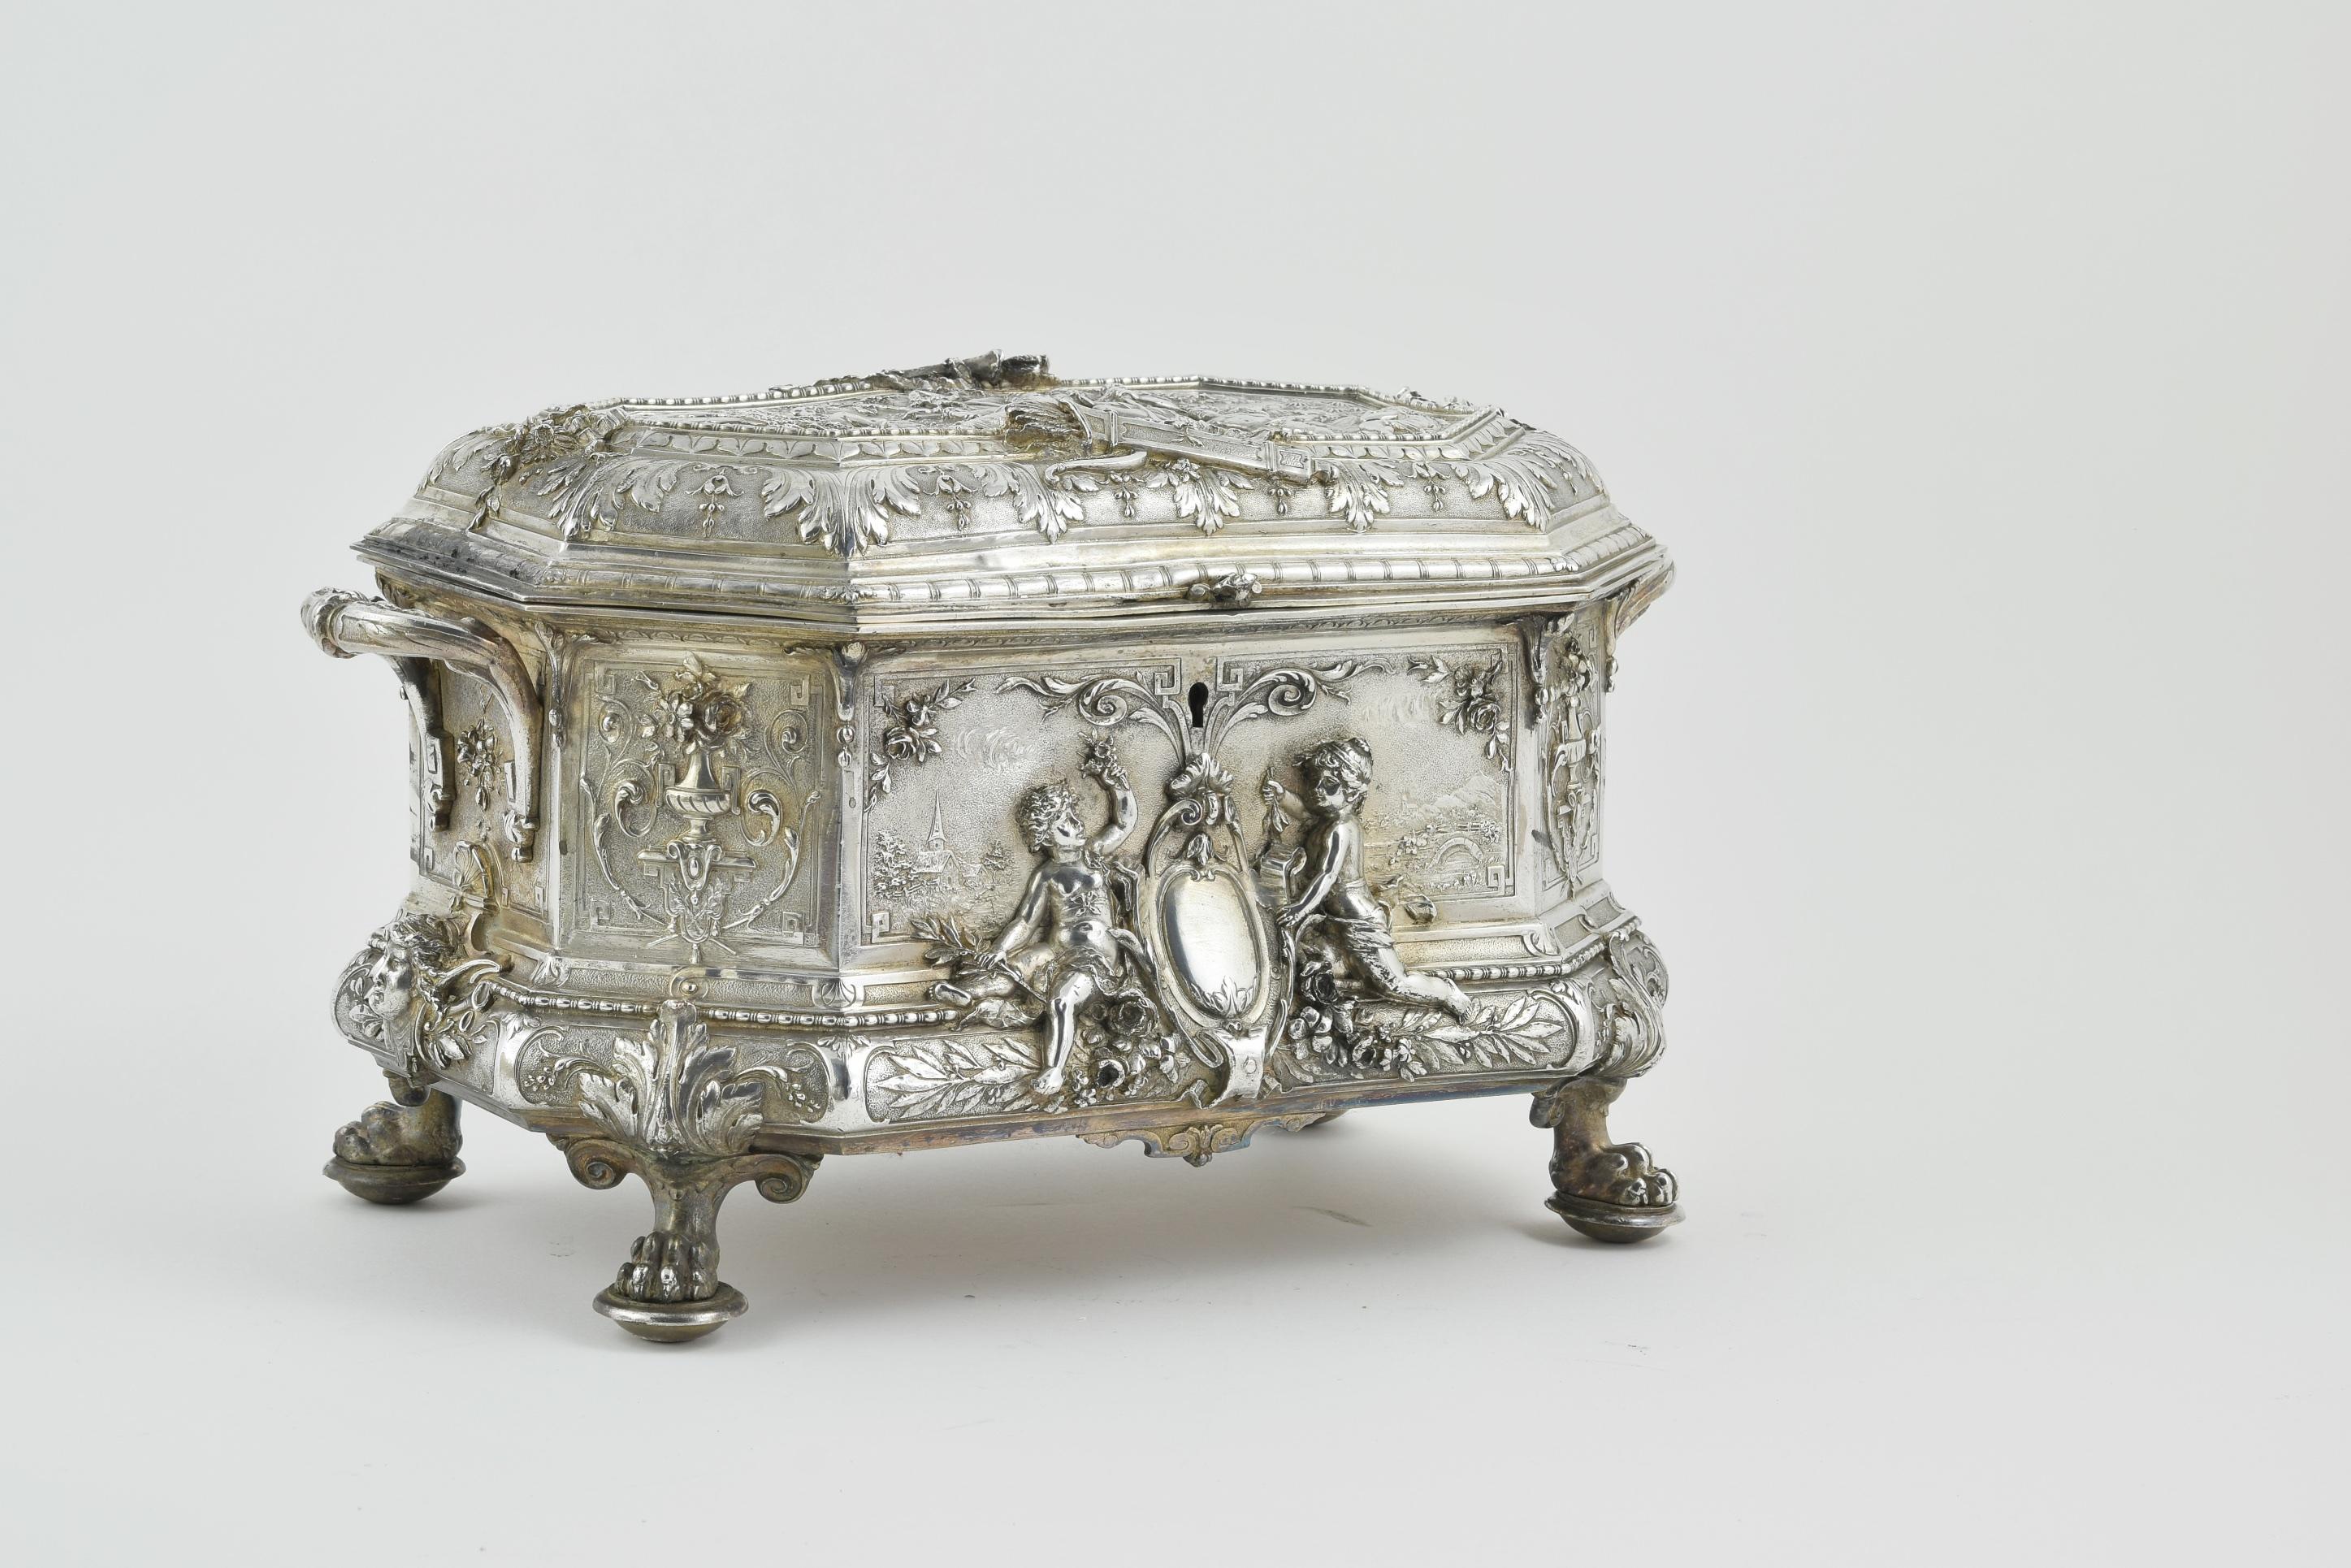 L'ensemble du cercueil est richement décoré. Posée sur des pattes de lions ornées de motifs baroques, la scène supérieure représente Cupidon debout à côté de deux amoureux (peut-être Daphné et Apollo). L'avant et l'arrière du cercueil avec un